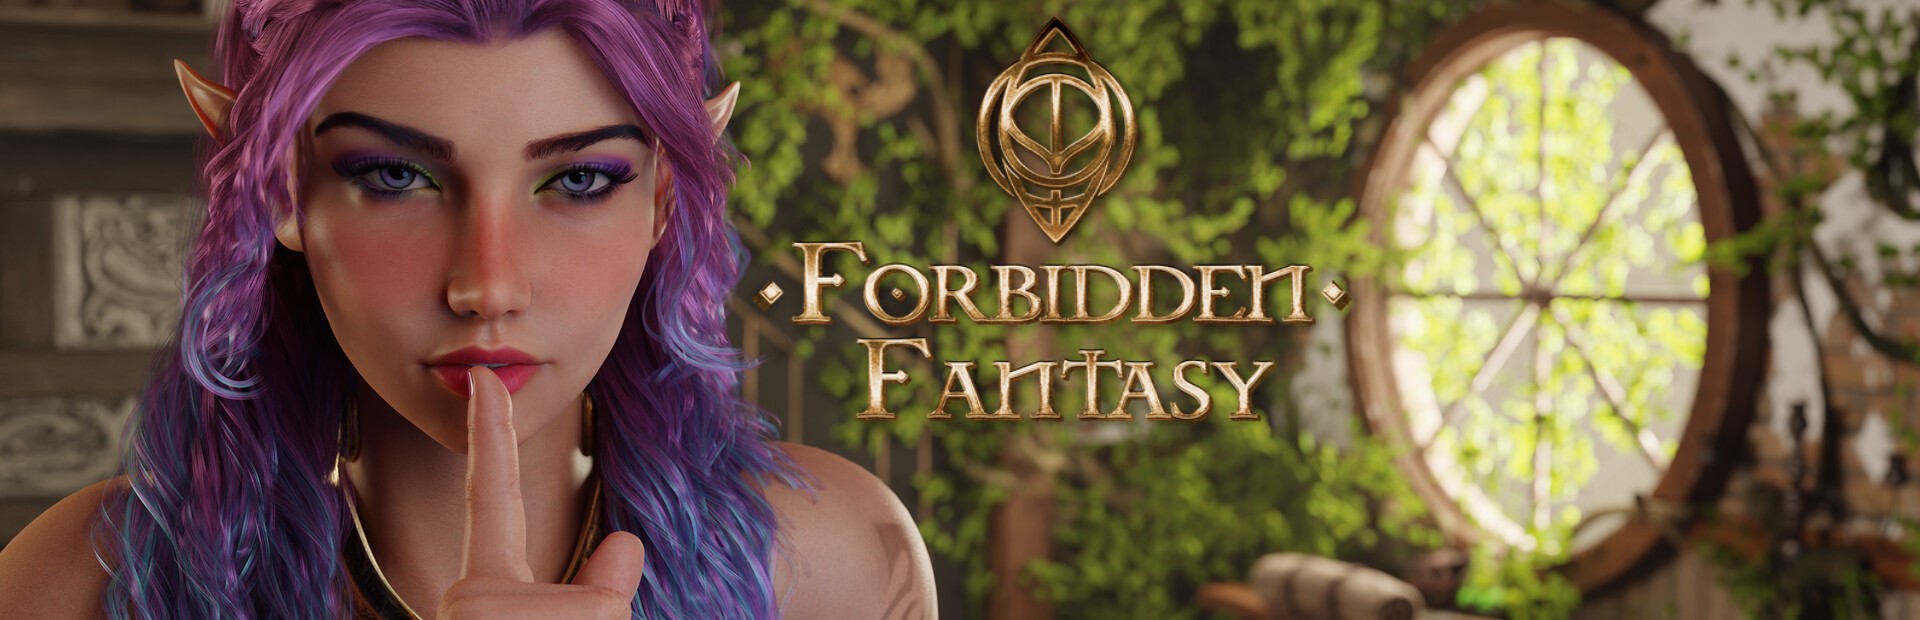 Forbidden Fantasy1.jpg